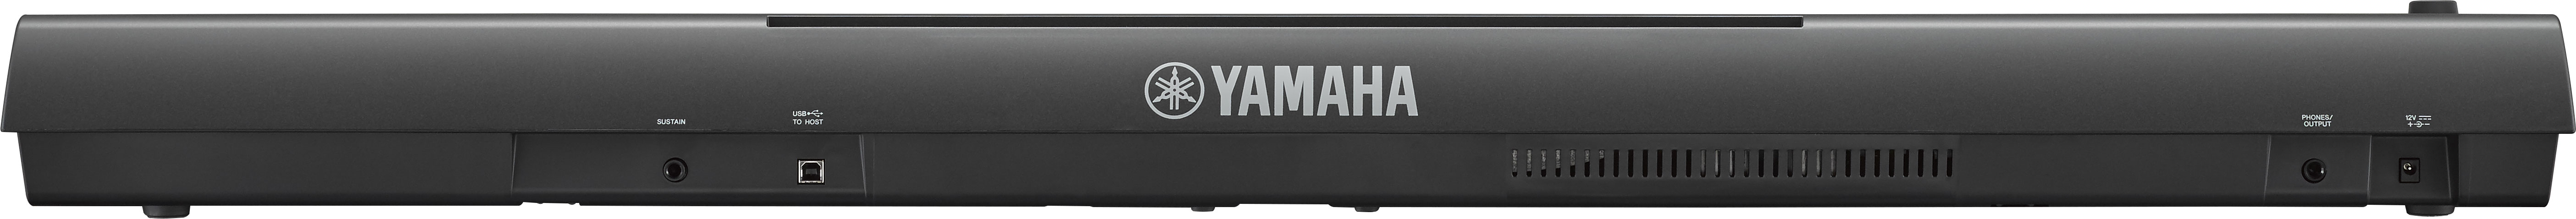 Yamaha Np-32 - Black - Portable digital piano - Variation 2